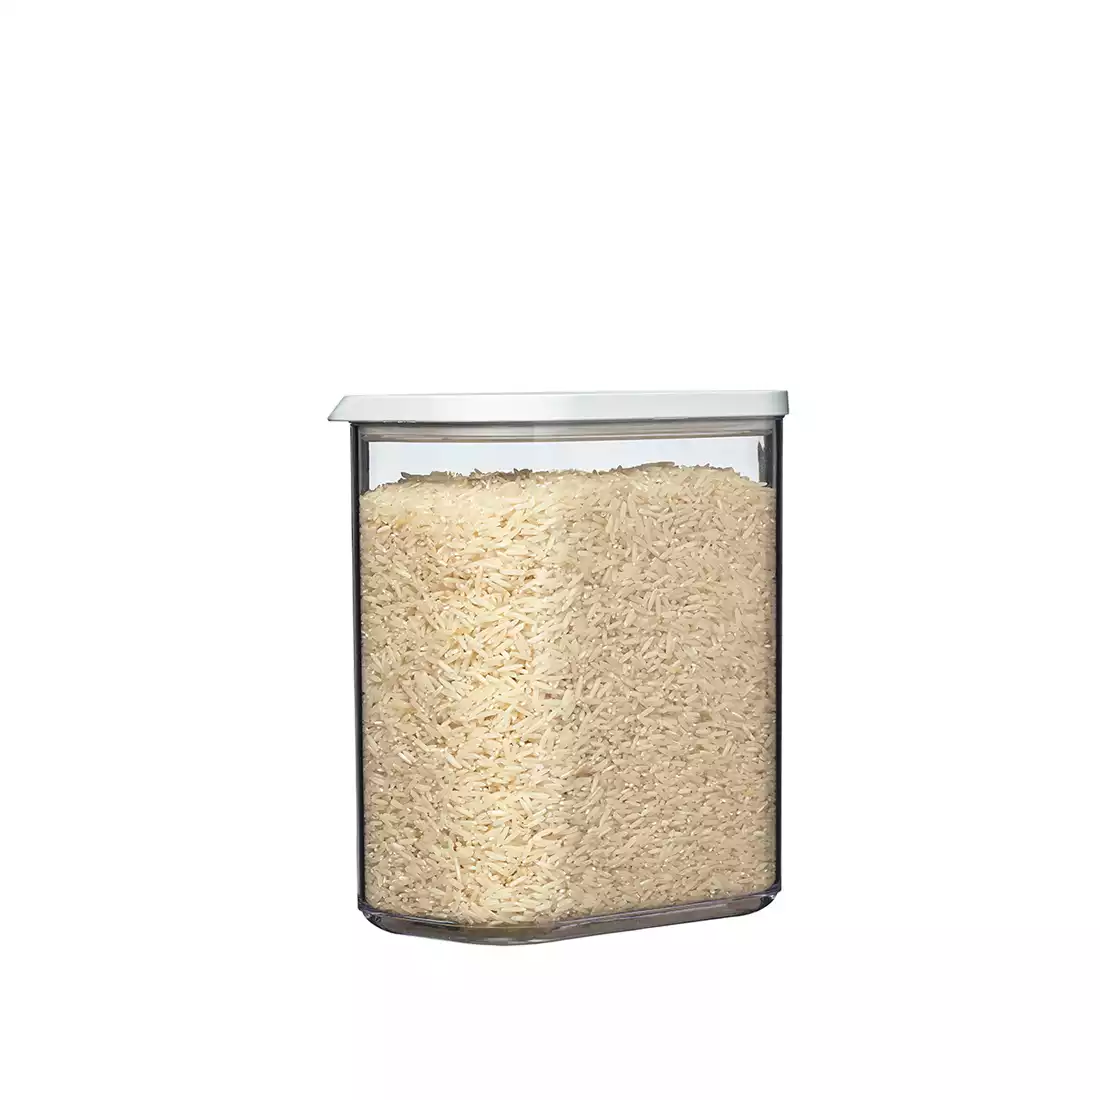 MEPAL MODULA pojemnik na żywność 1500 ml, biały